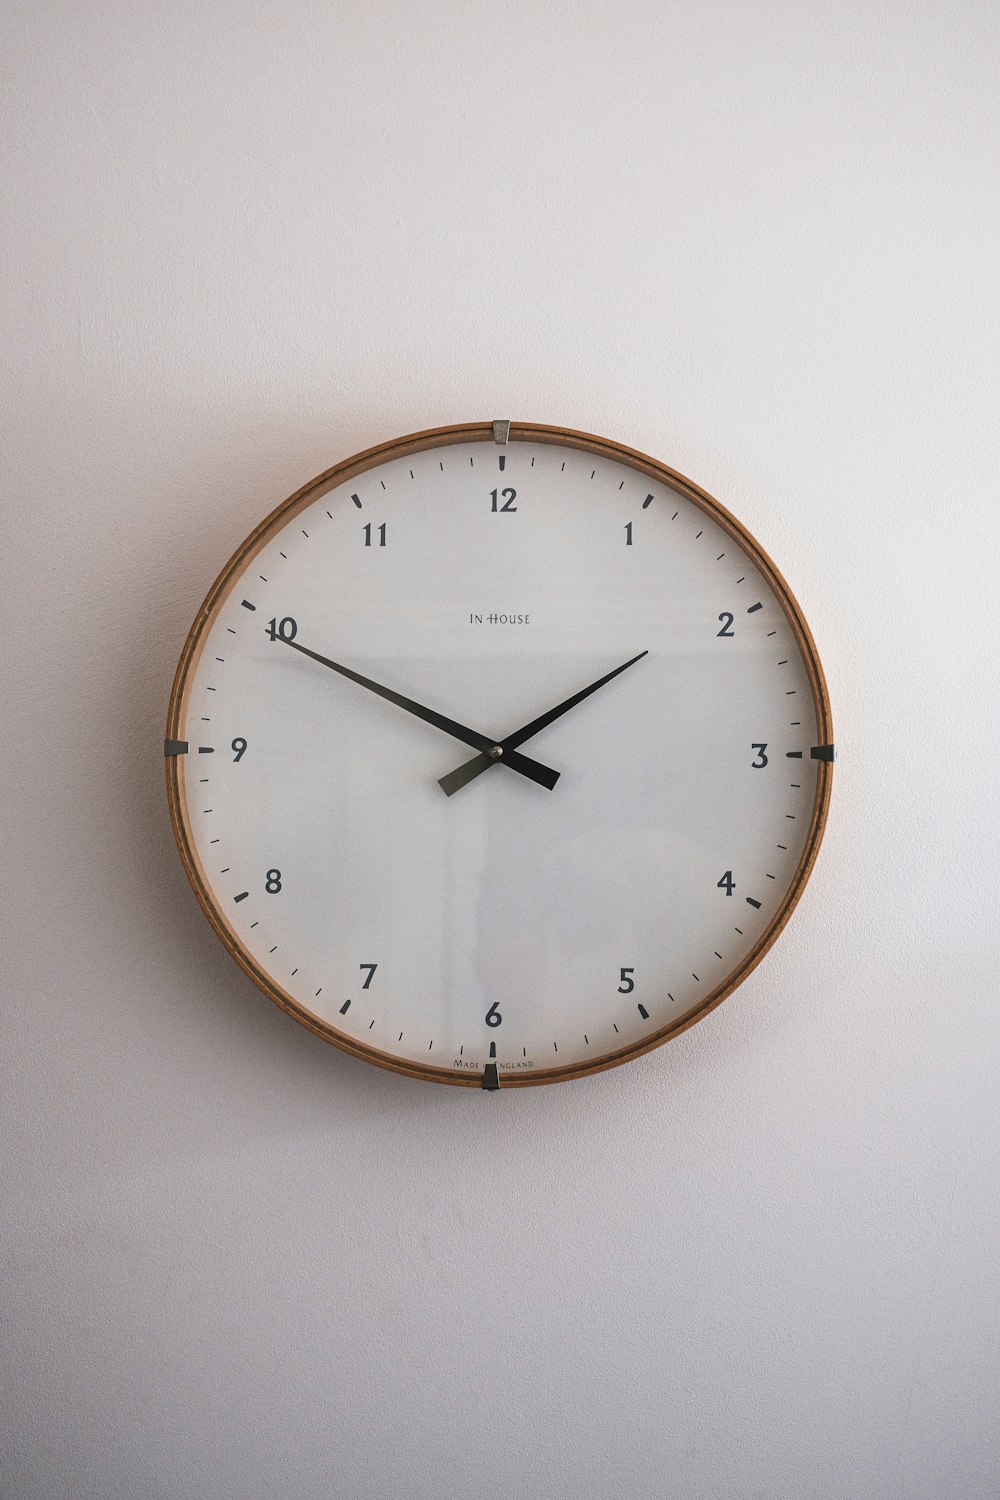 silver round analog wall clock at 10 00